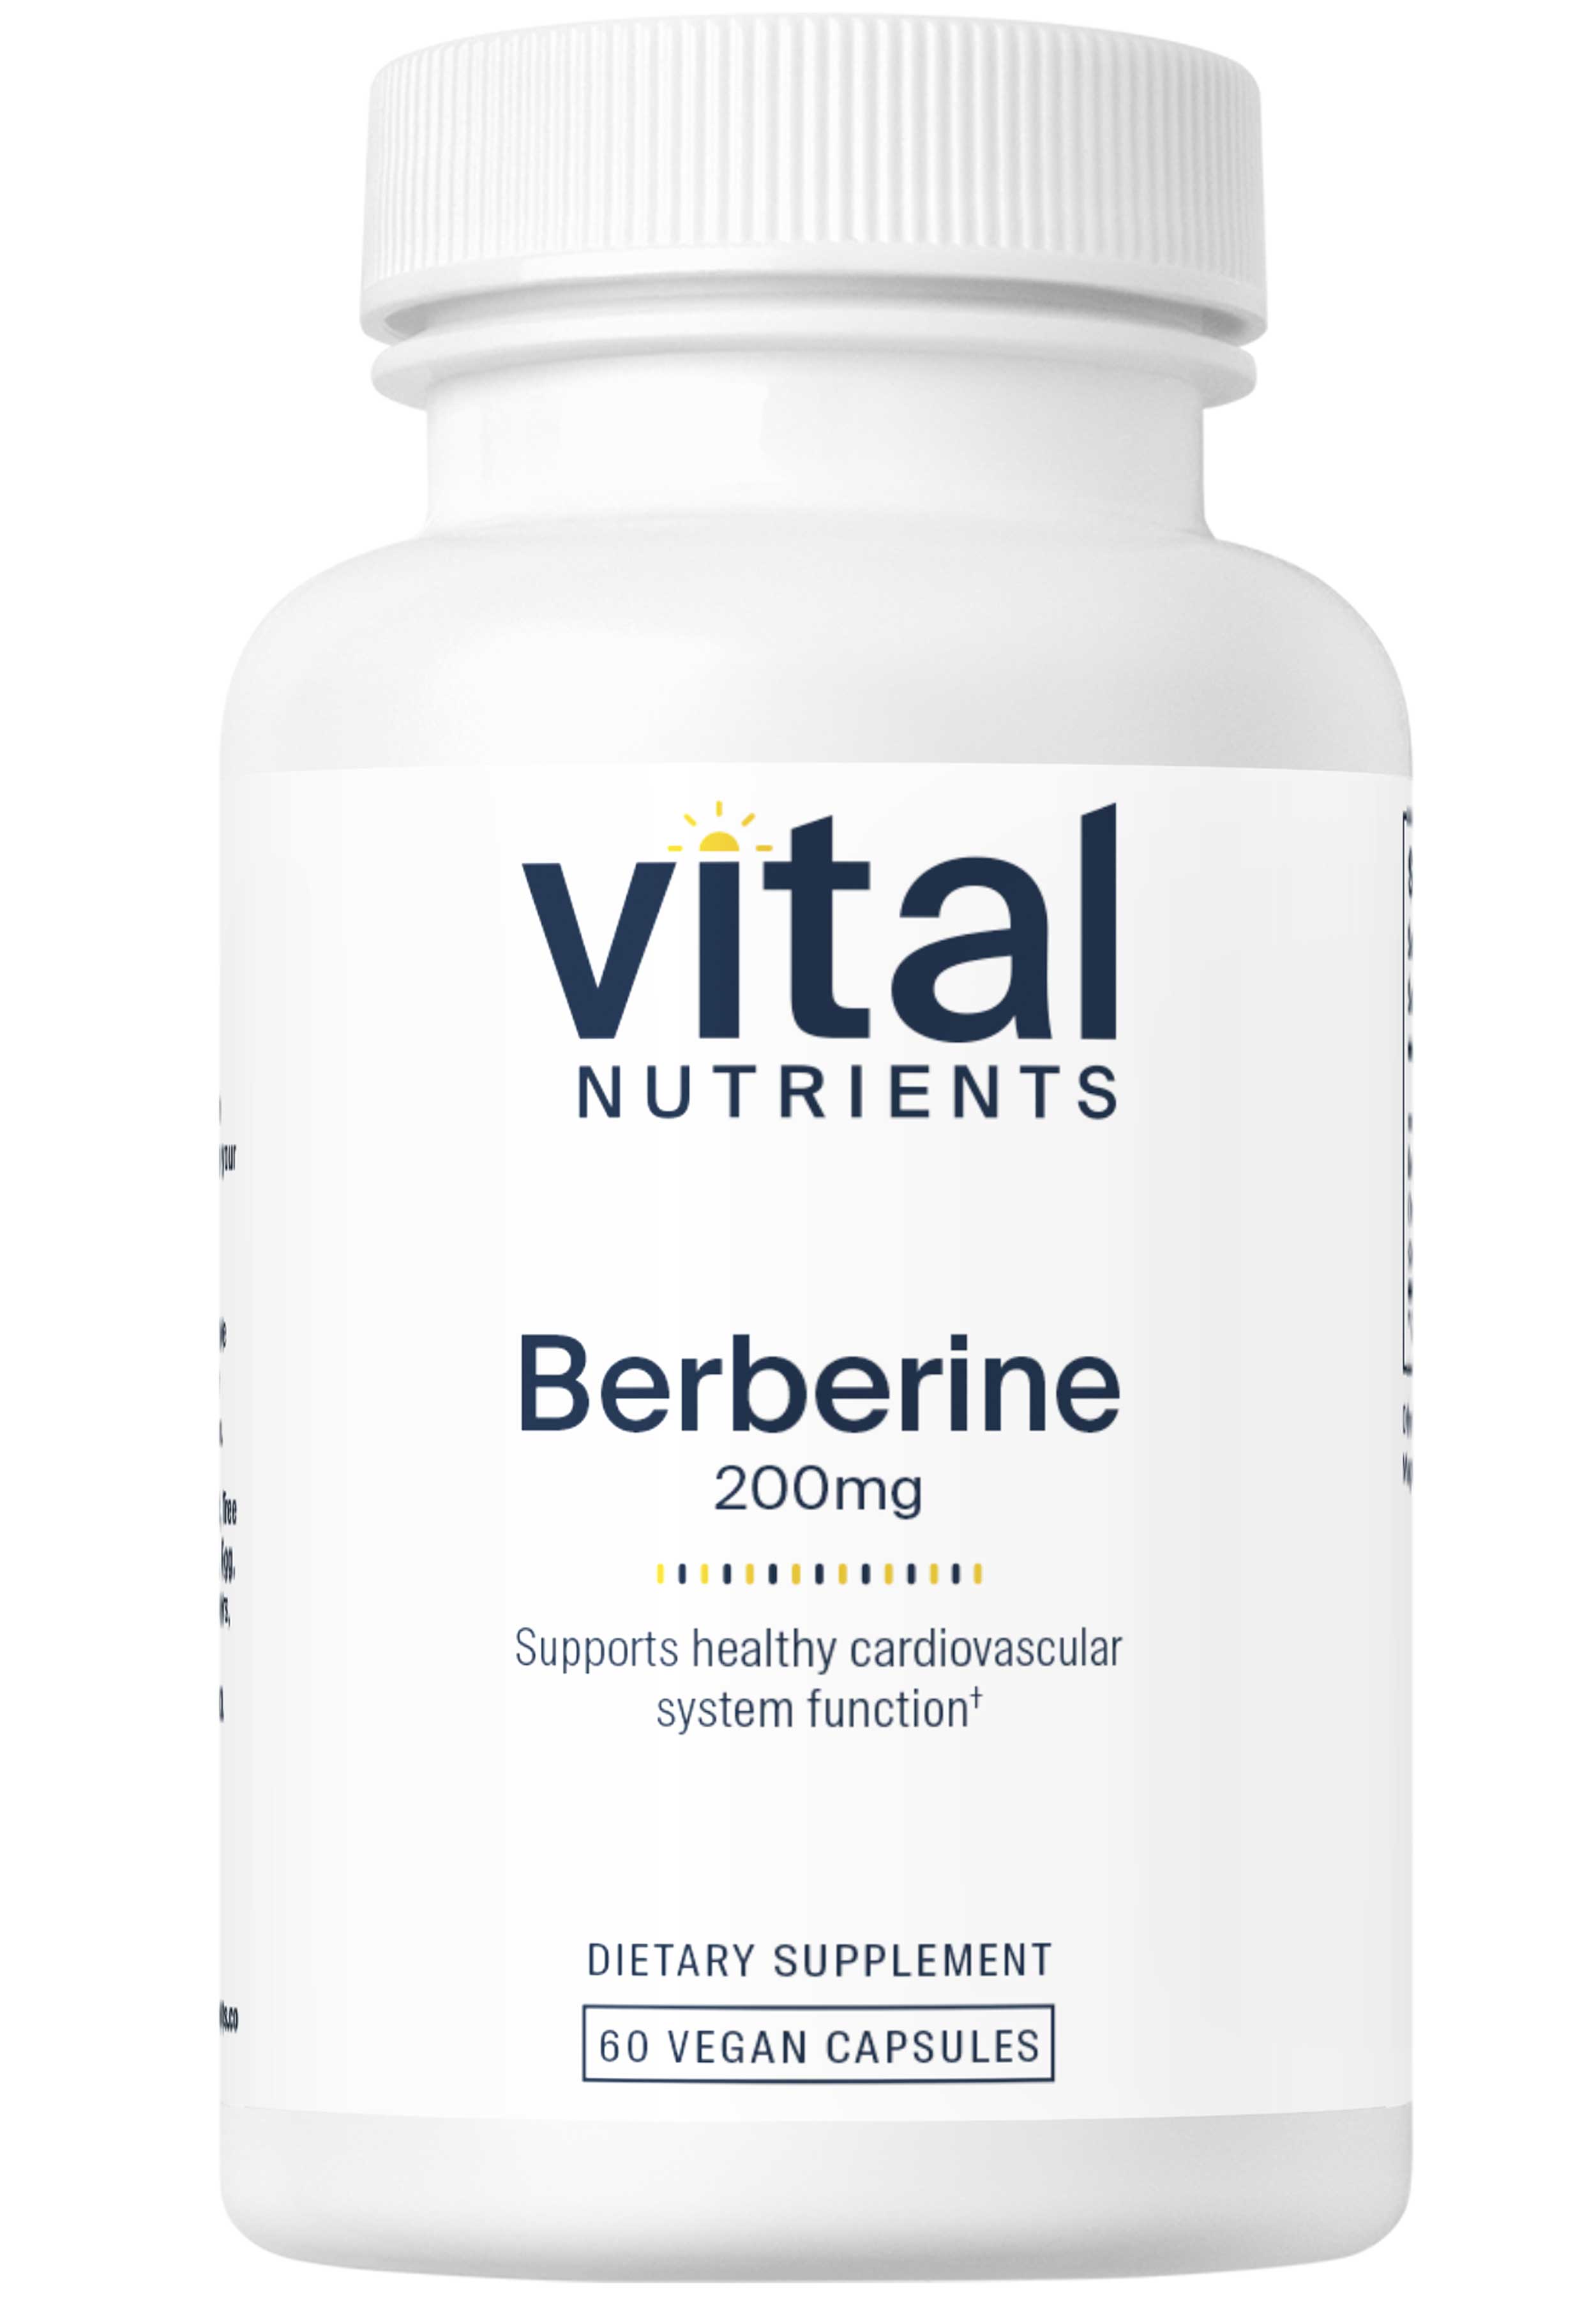 Vital Nutrients Berberine 200mg